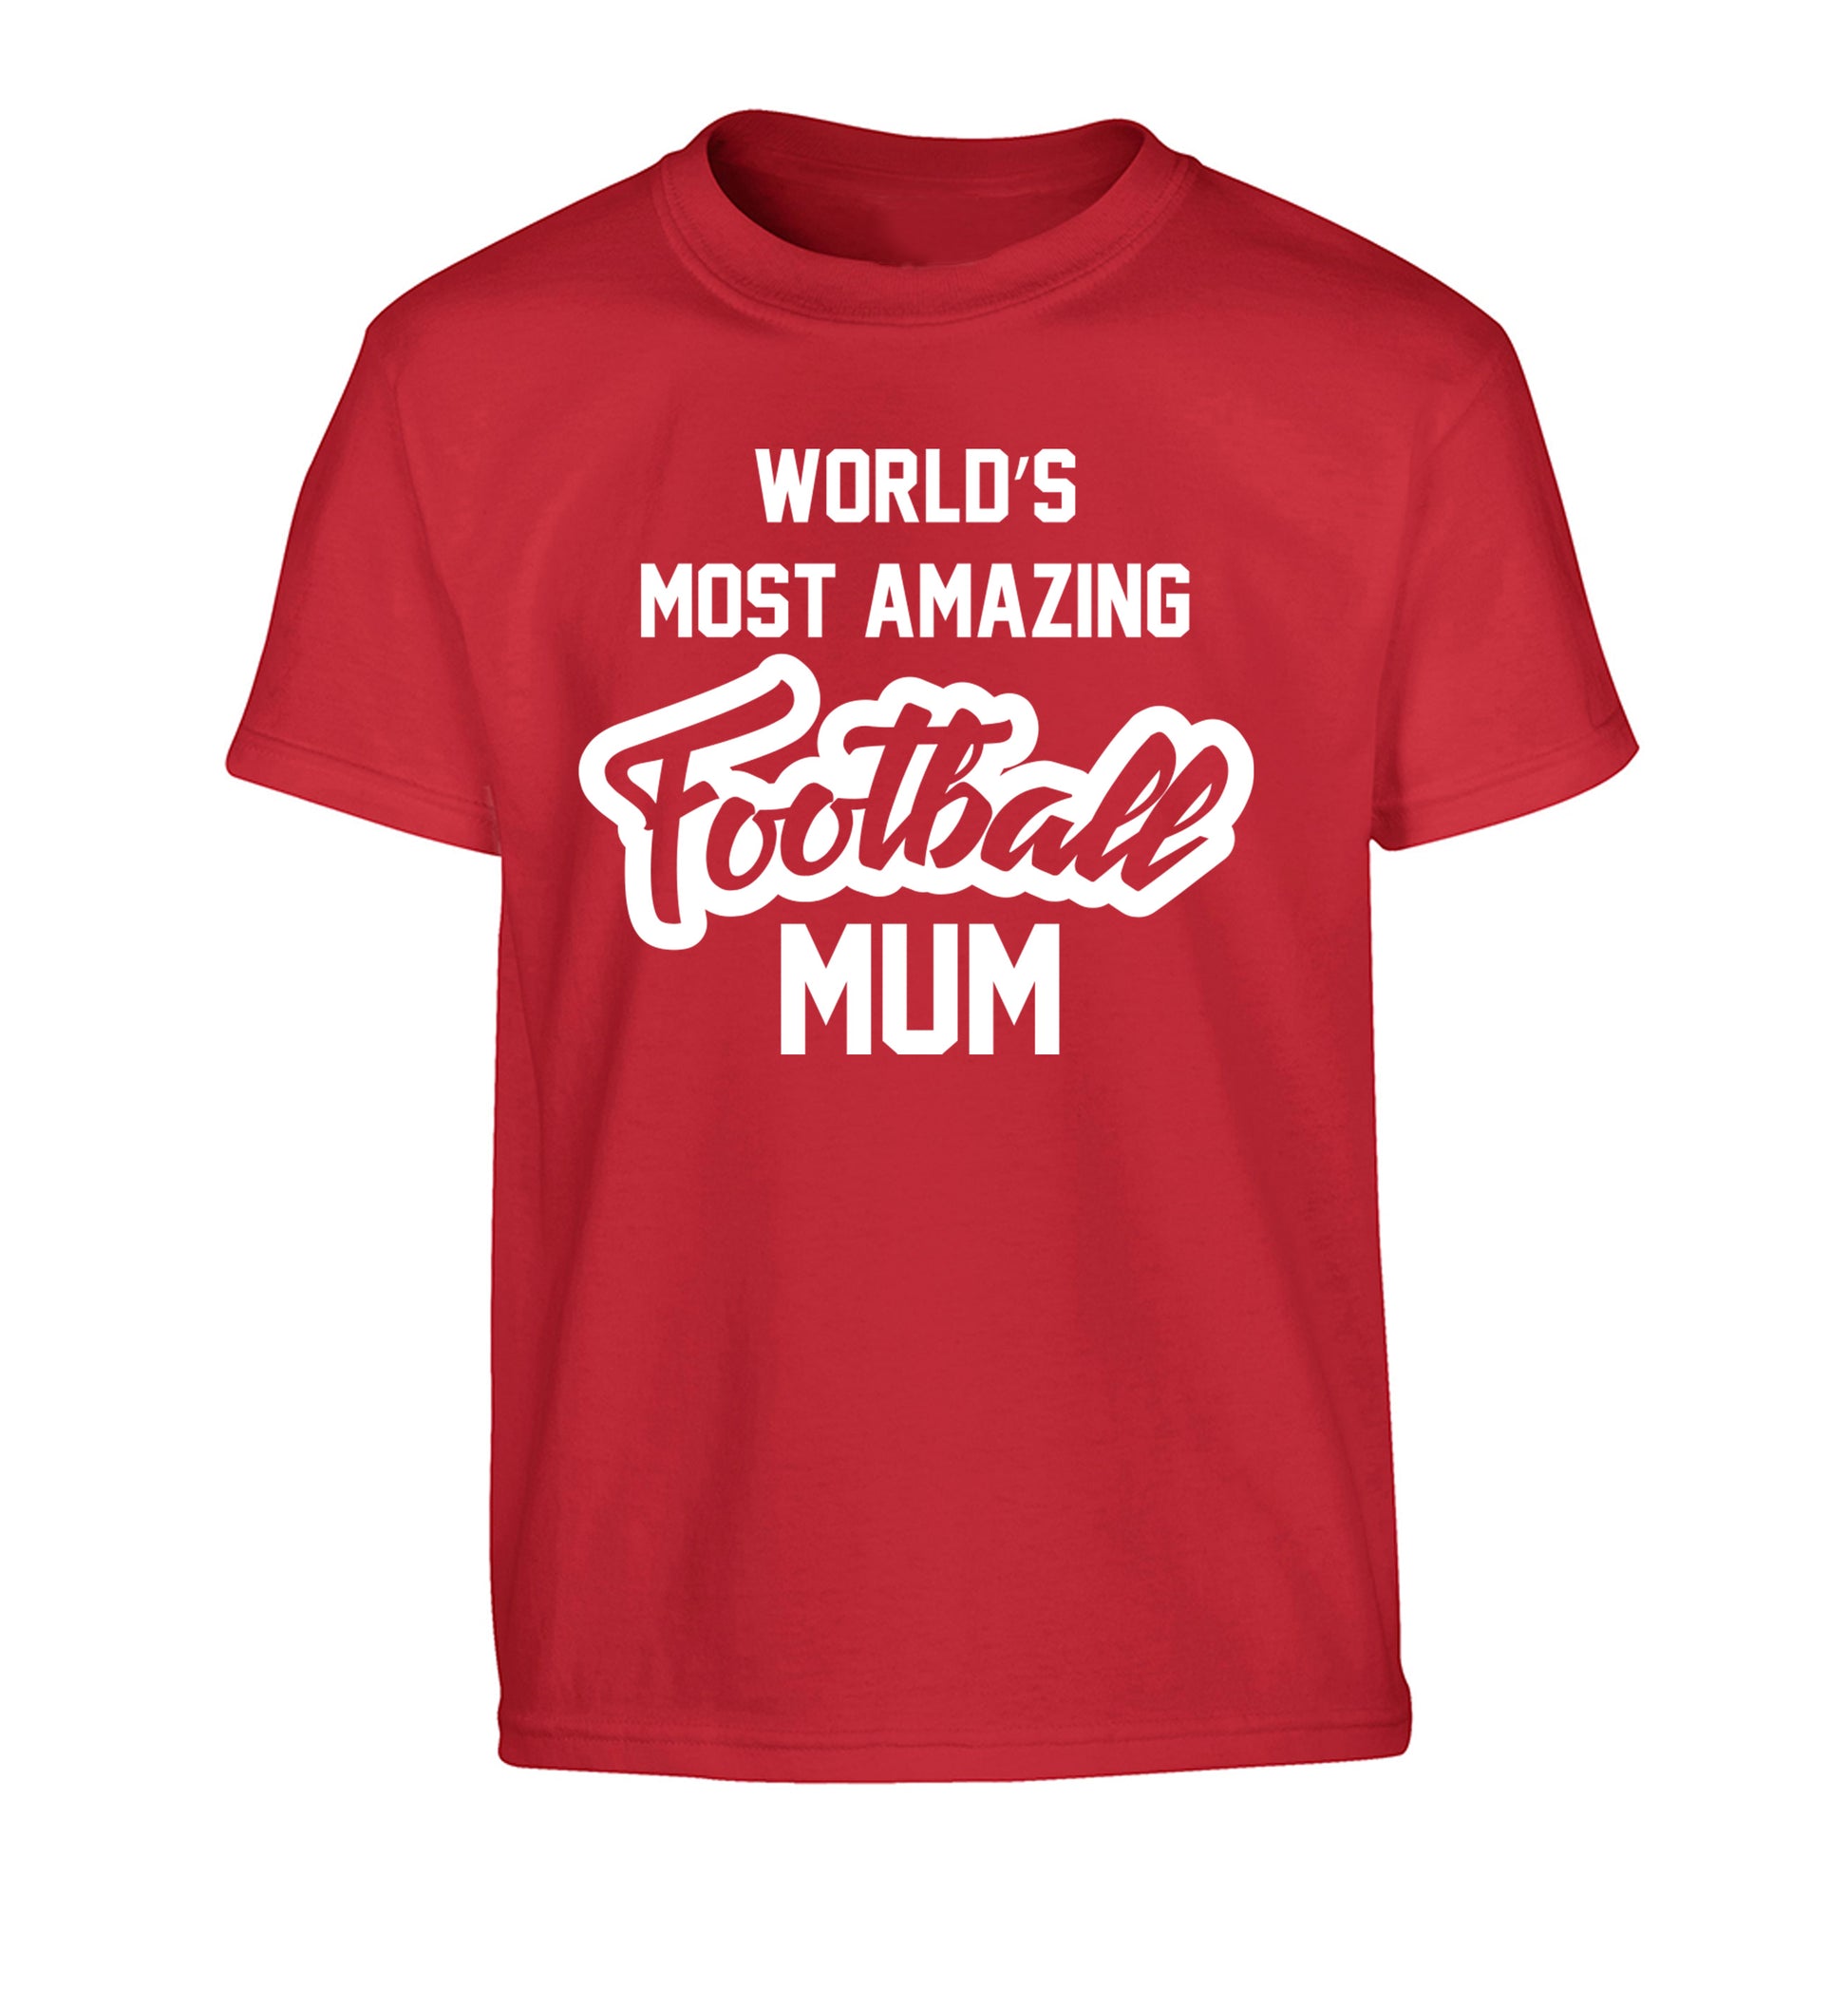 Worlds most amazing football mum Children's red Tshirt 12-14 Years